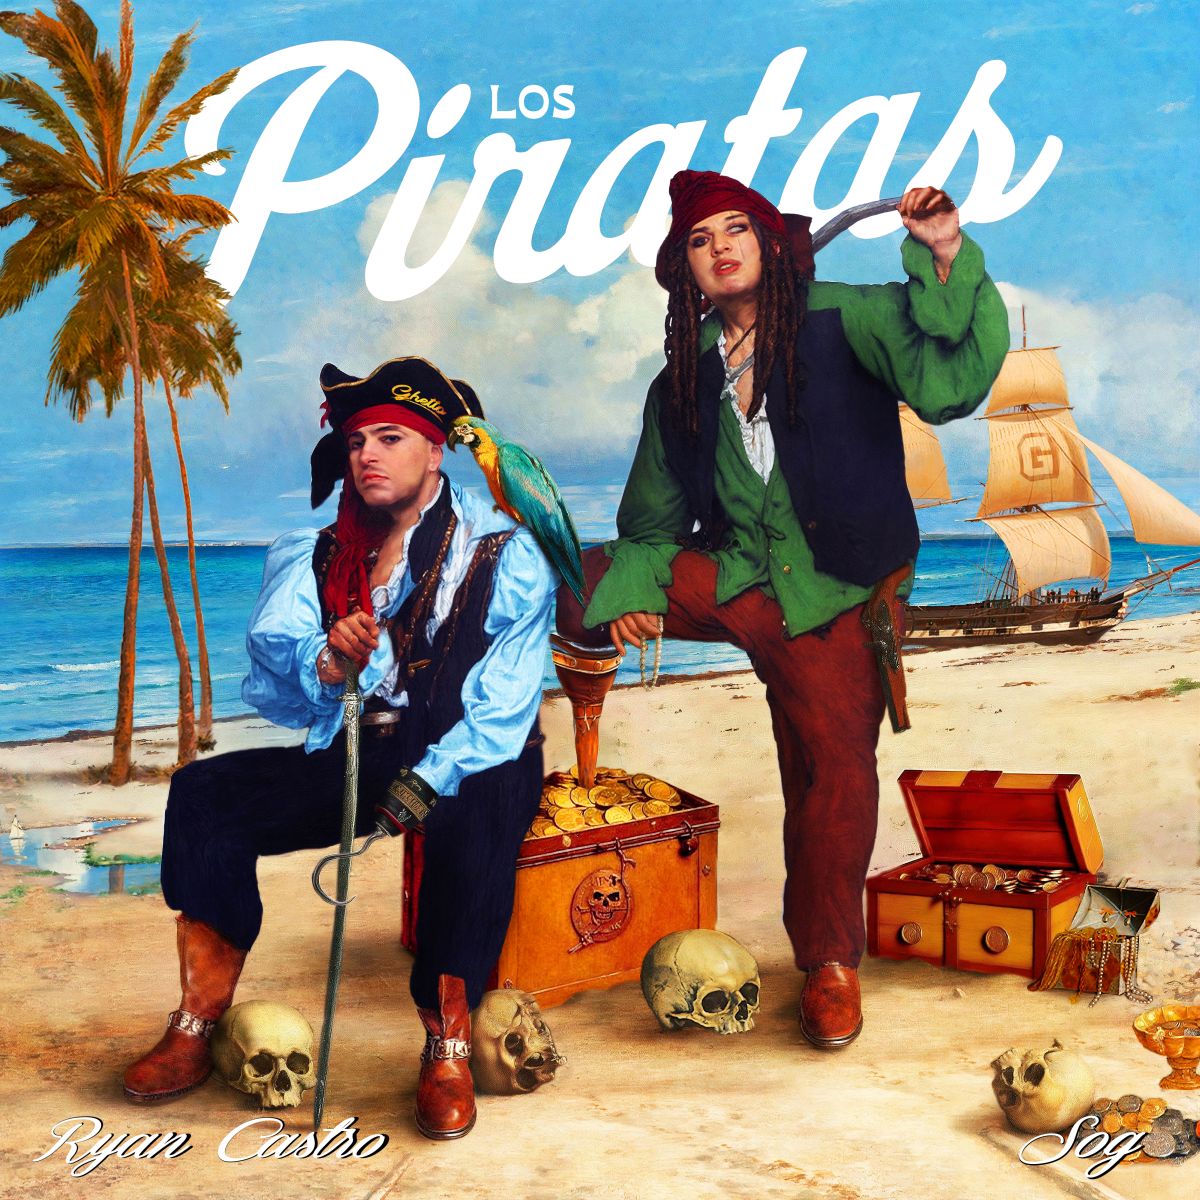 Ryan Castro pubblica a sorpresa un nuovo ep: Los Piratas